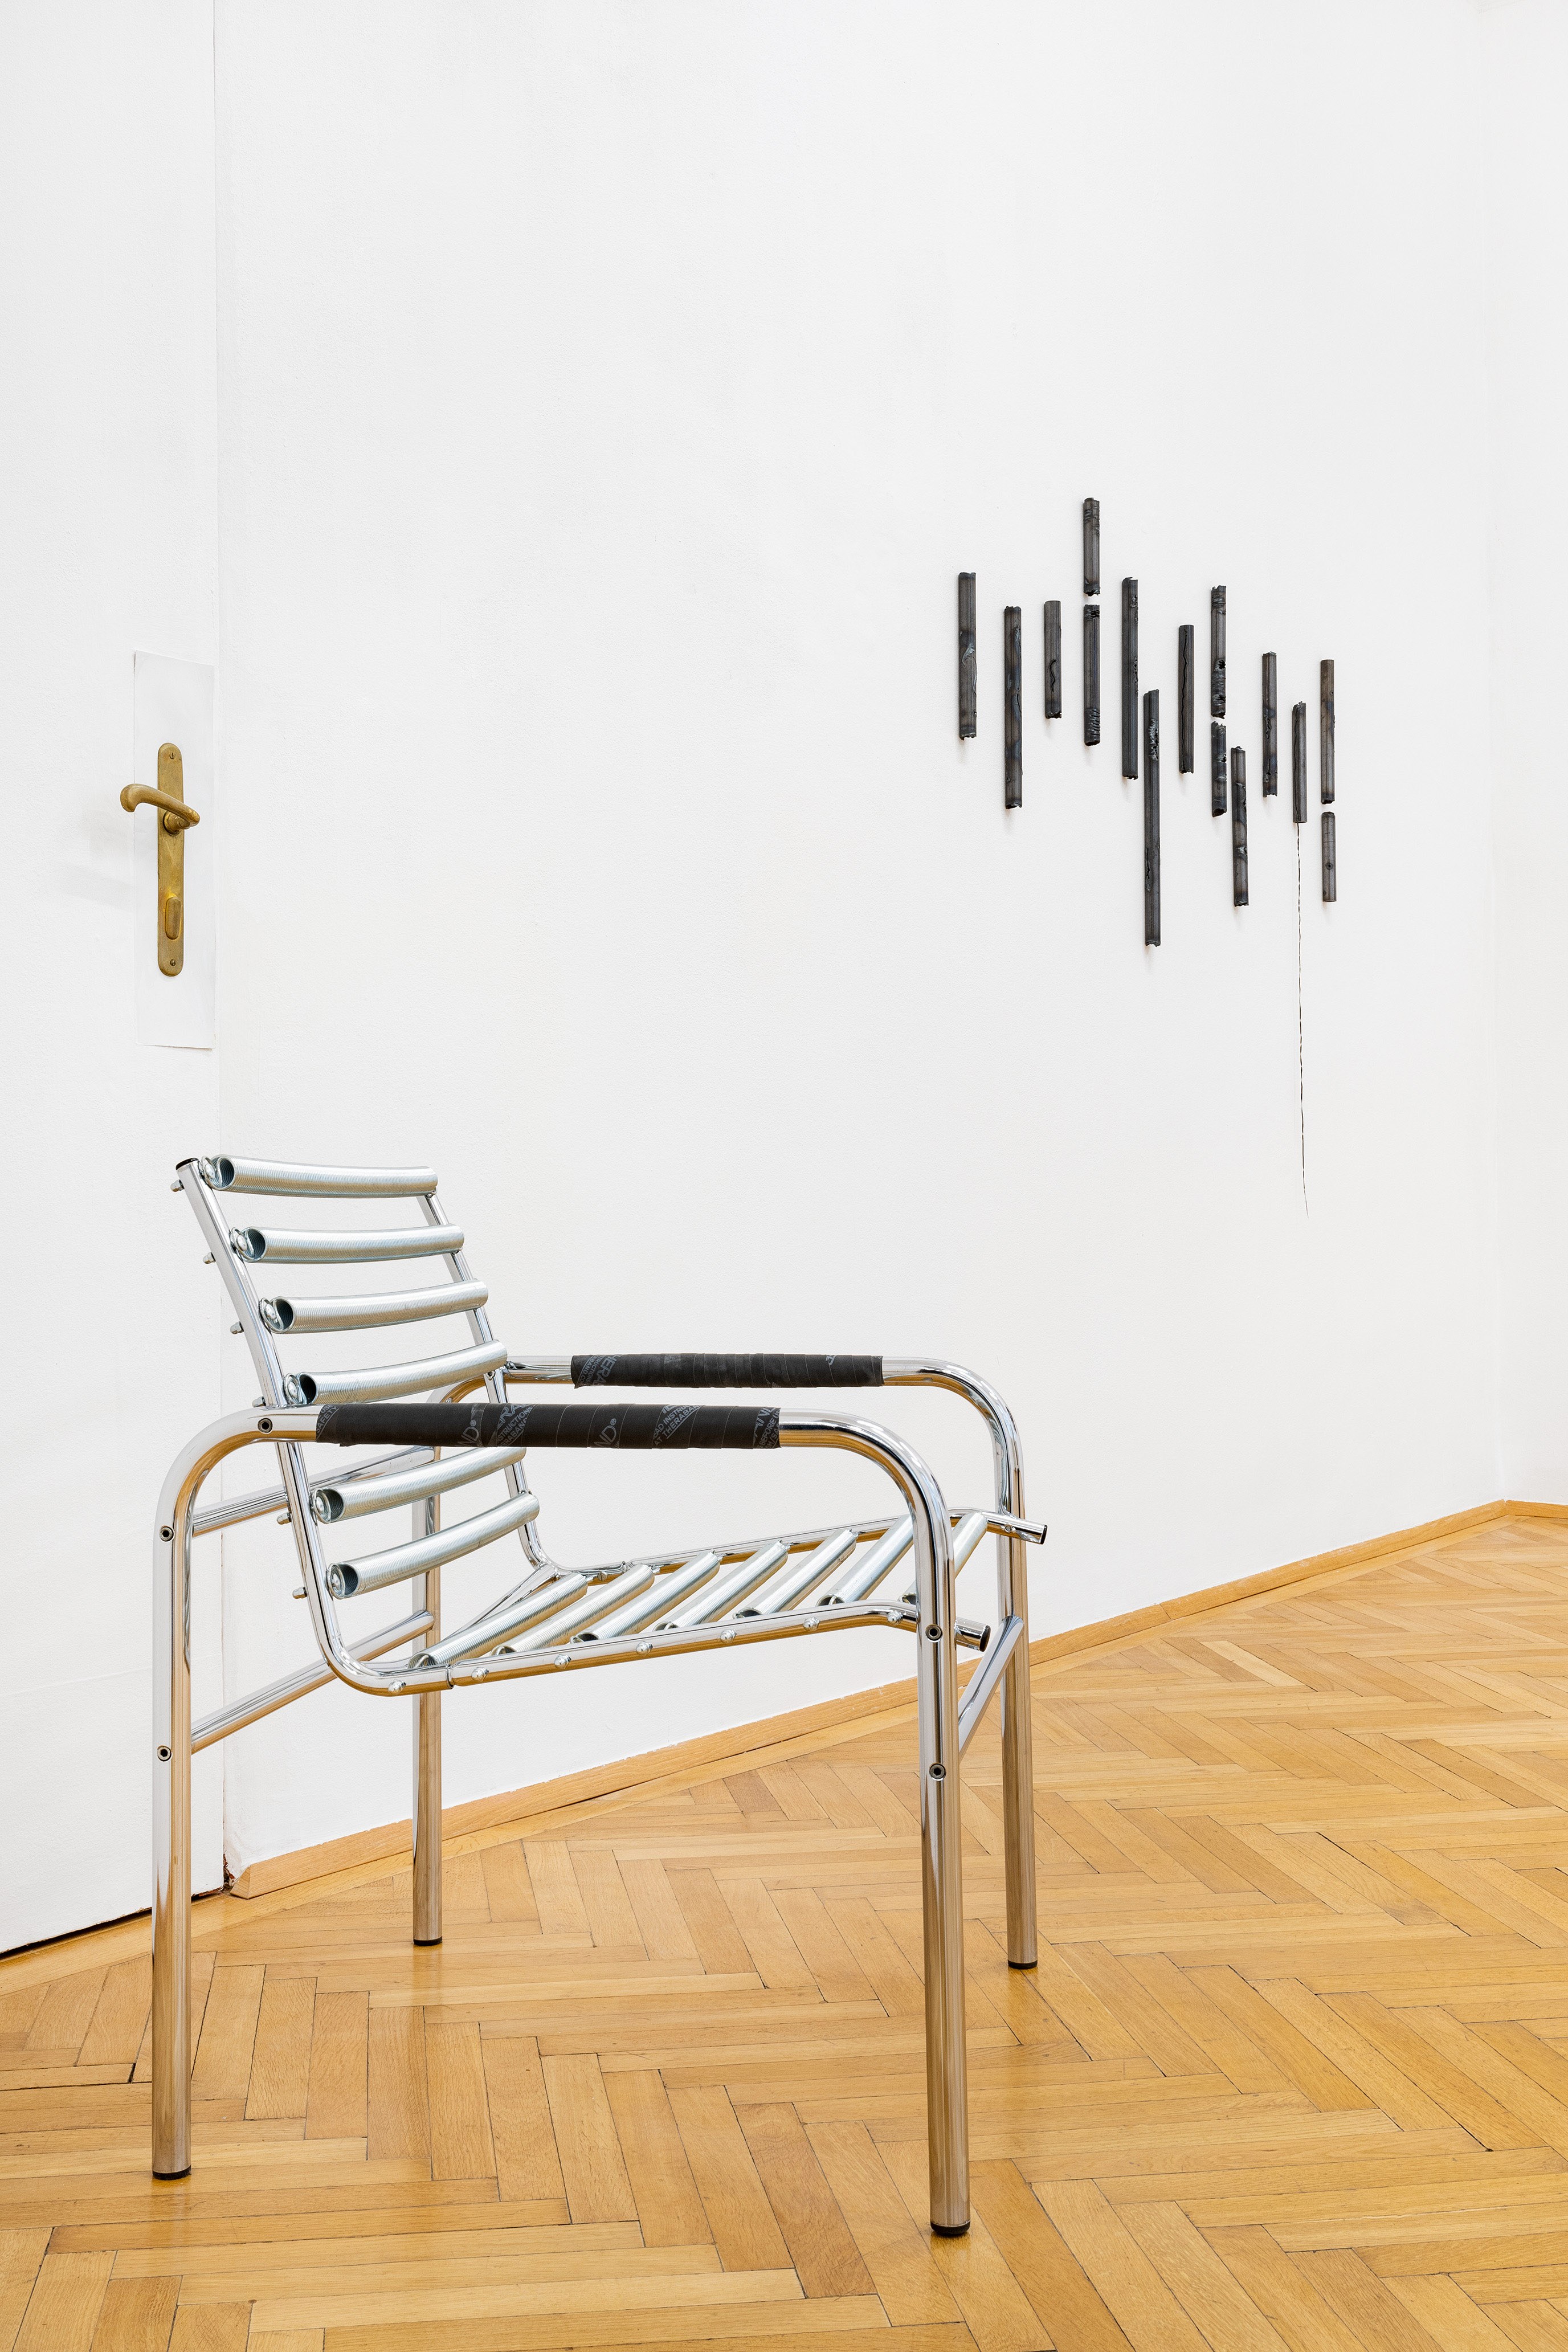 „Grit“ at Zeller van Almsick, Installation View, Sophie Hirsch (l.), Bianca Phos (r.), 2024